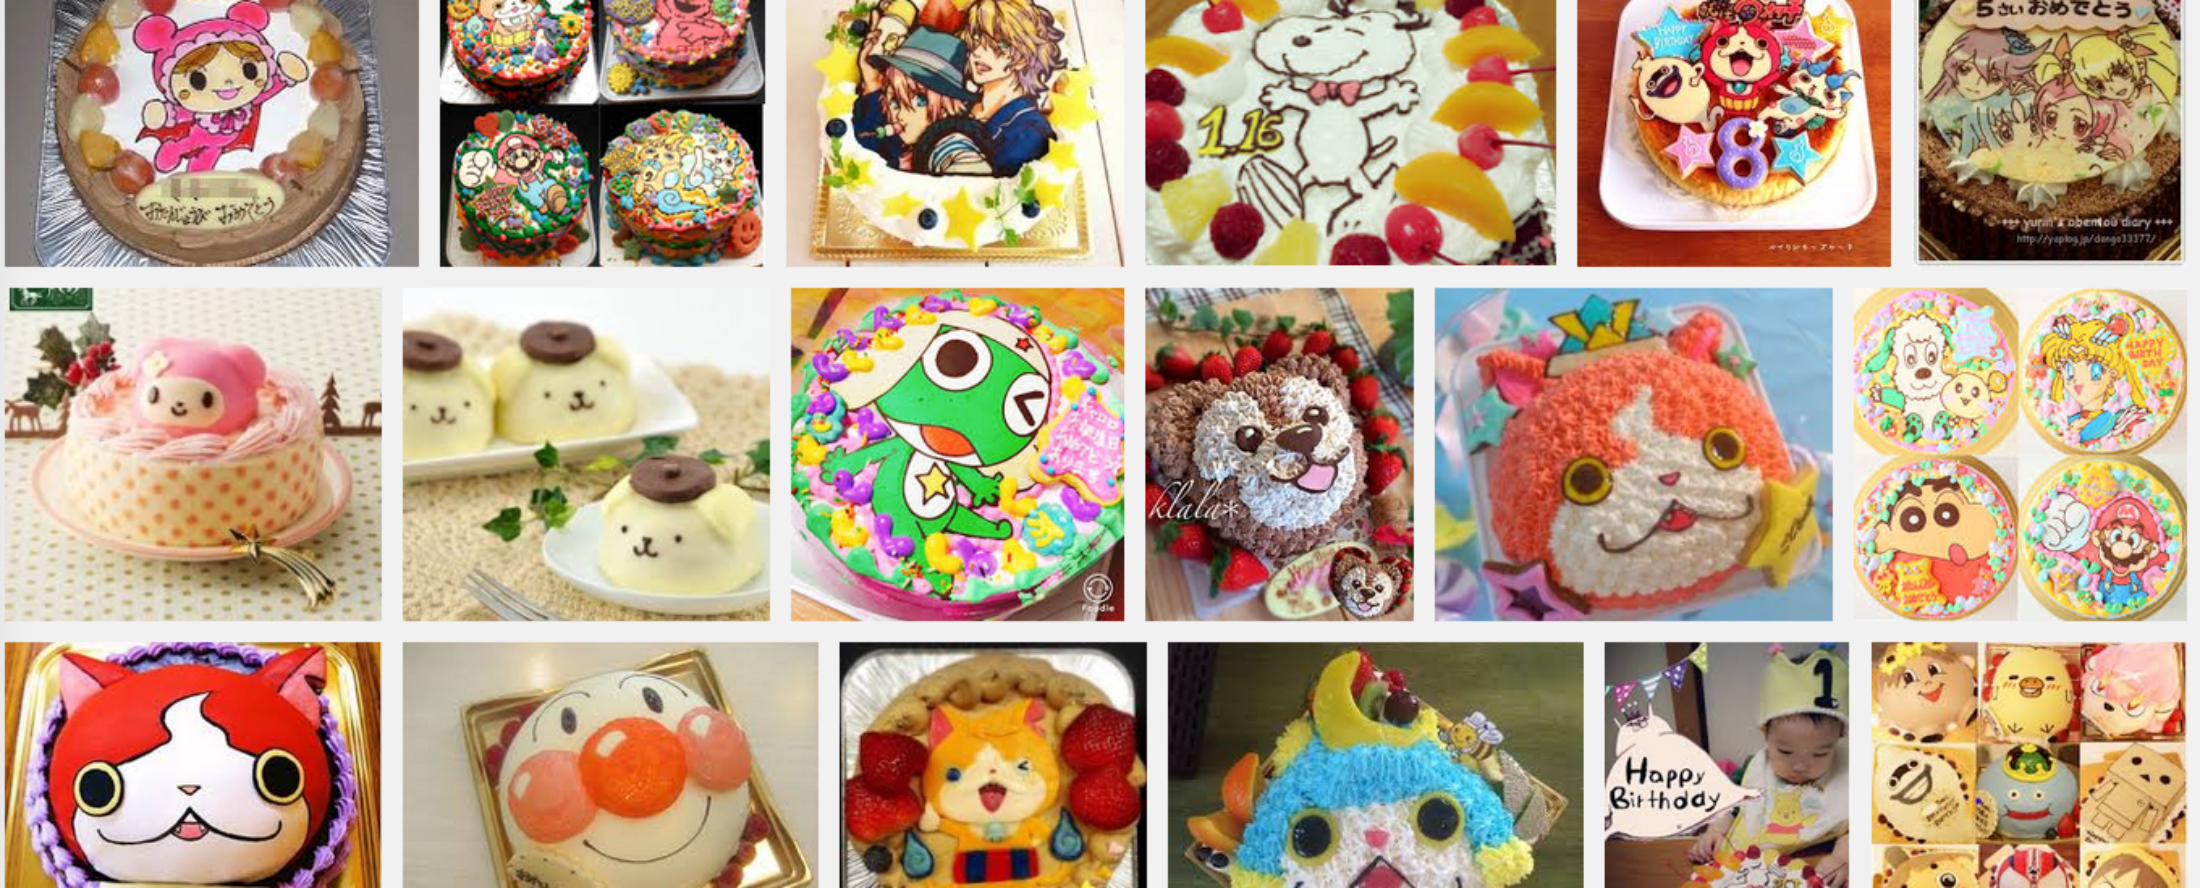 キャラクターケーキが注文できる宮崎県のケーキ店 キャラケーキ通販ランキング